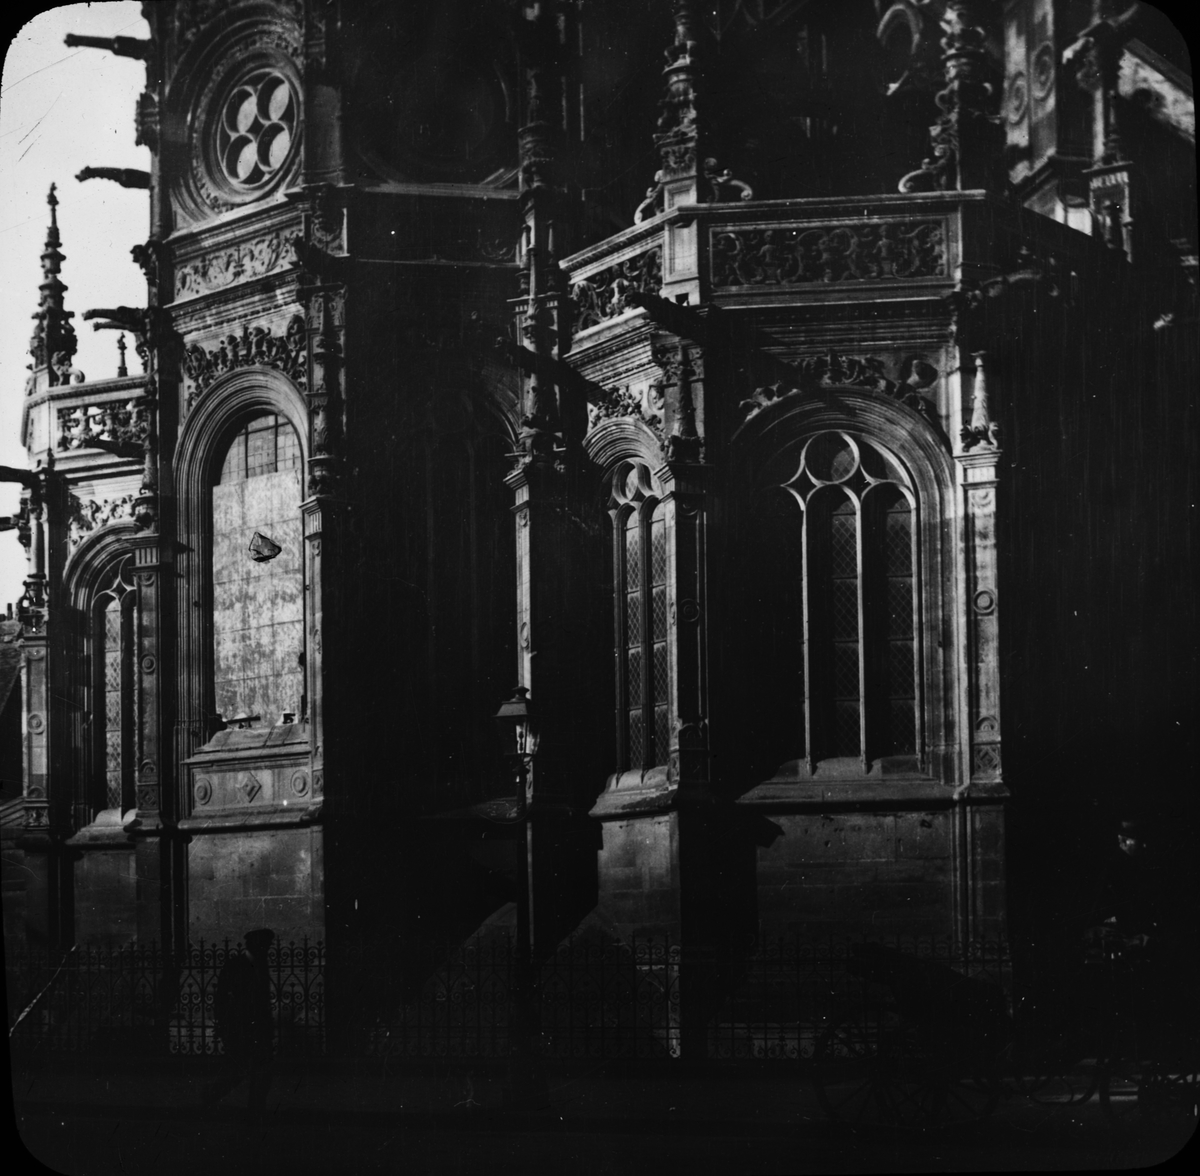 Skioptikonbild med motiv av L'église Saint-Pierre i Caen.
Bilden har förvarats i kartong märkt: Resan 1908. Caen 8. X. Text på bild: "E'gl. St. Pierre".